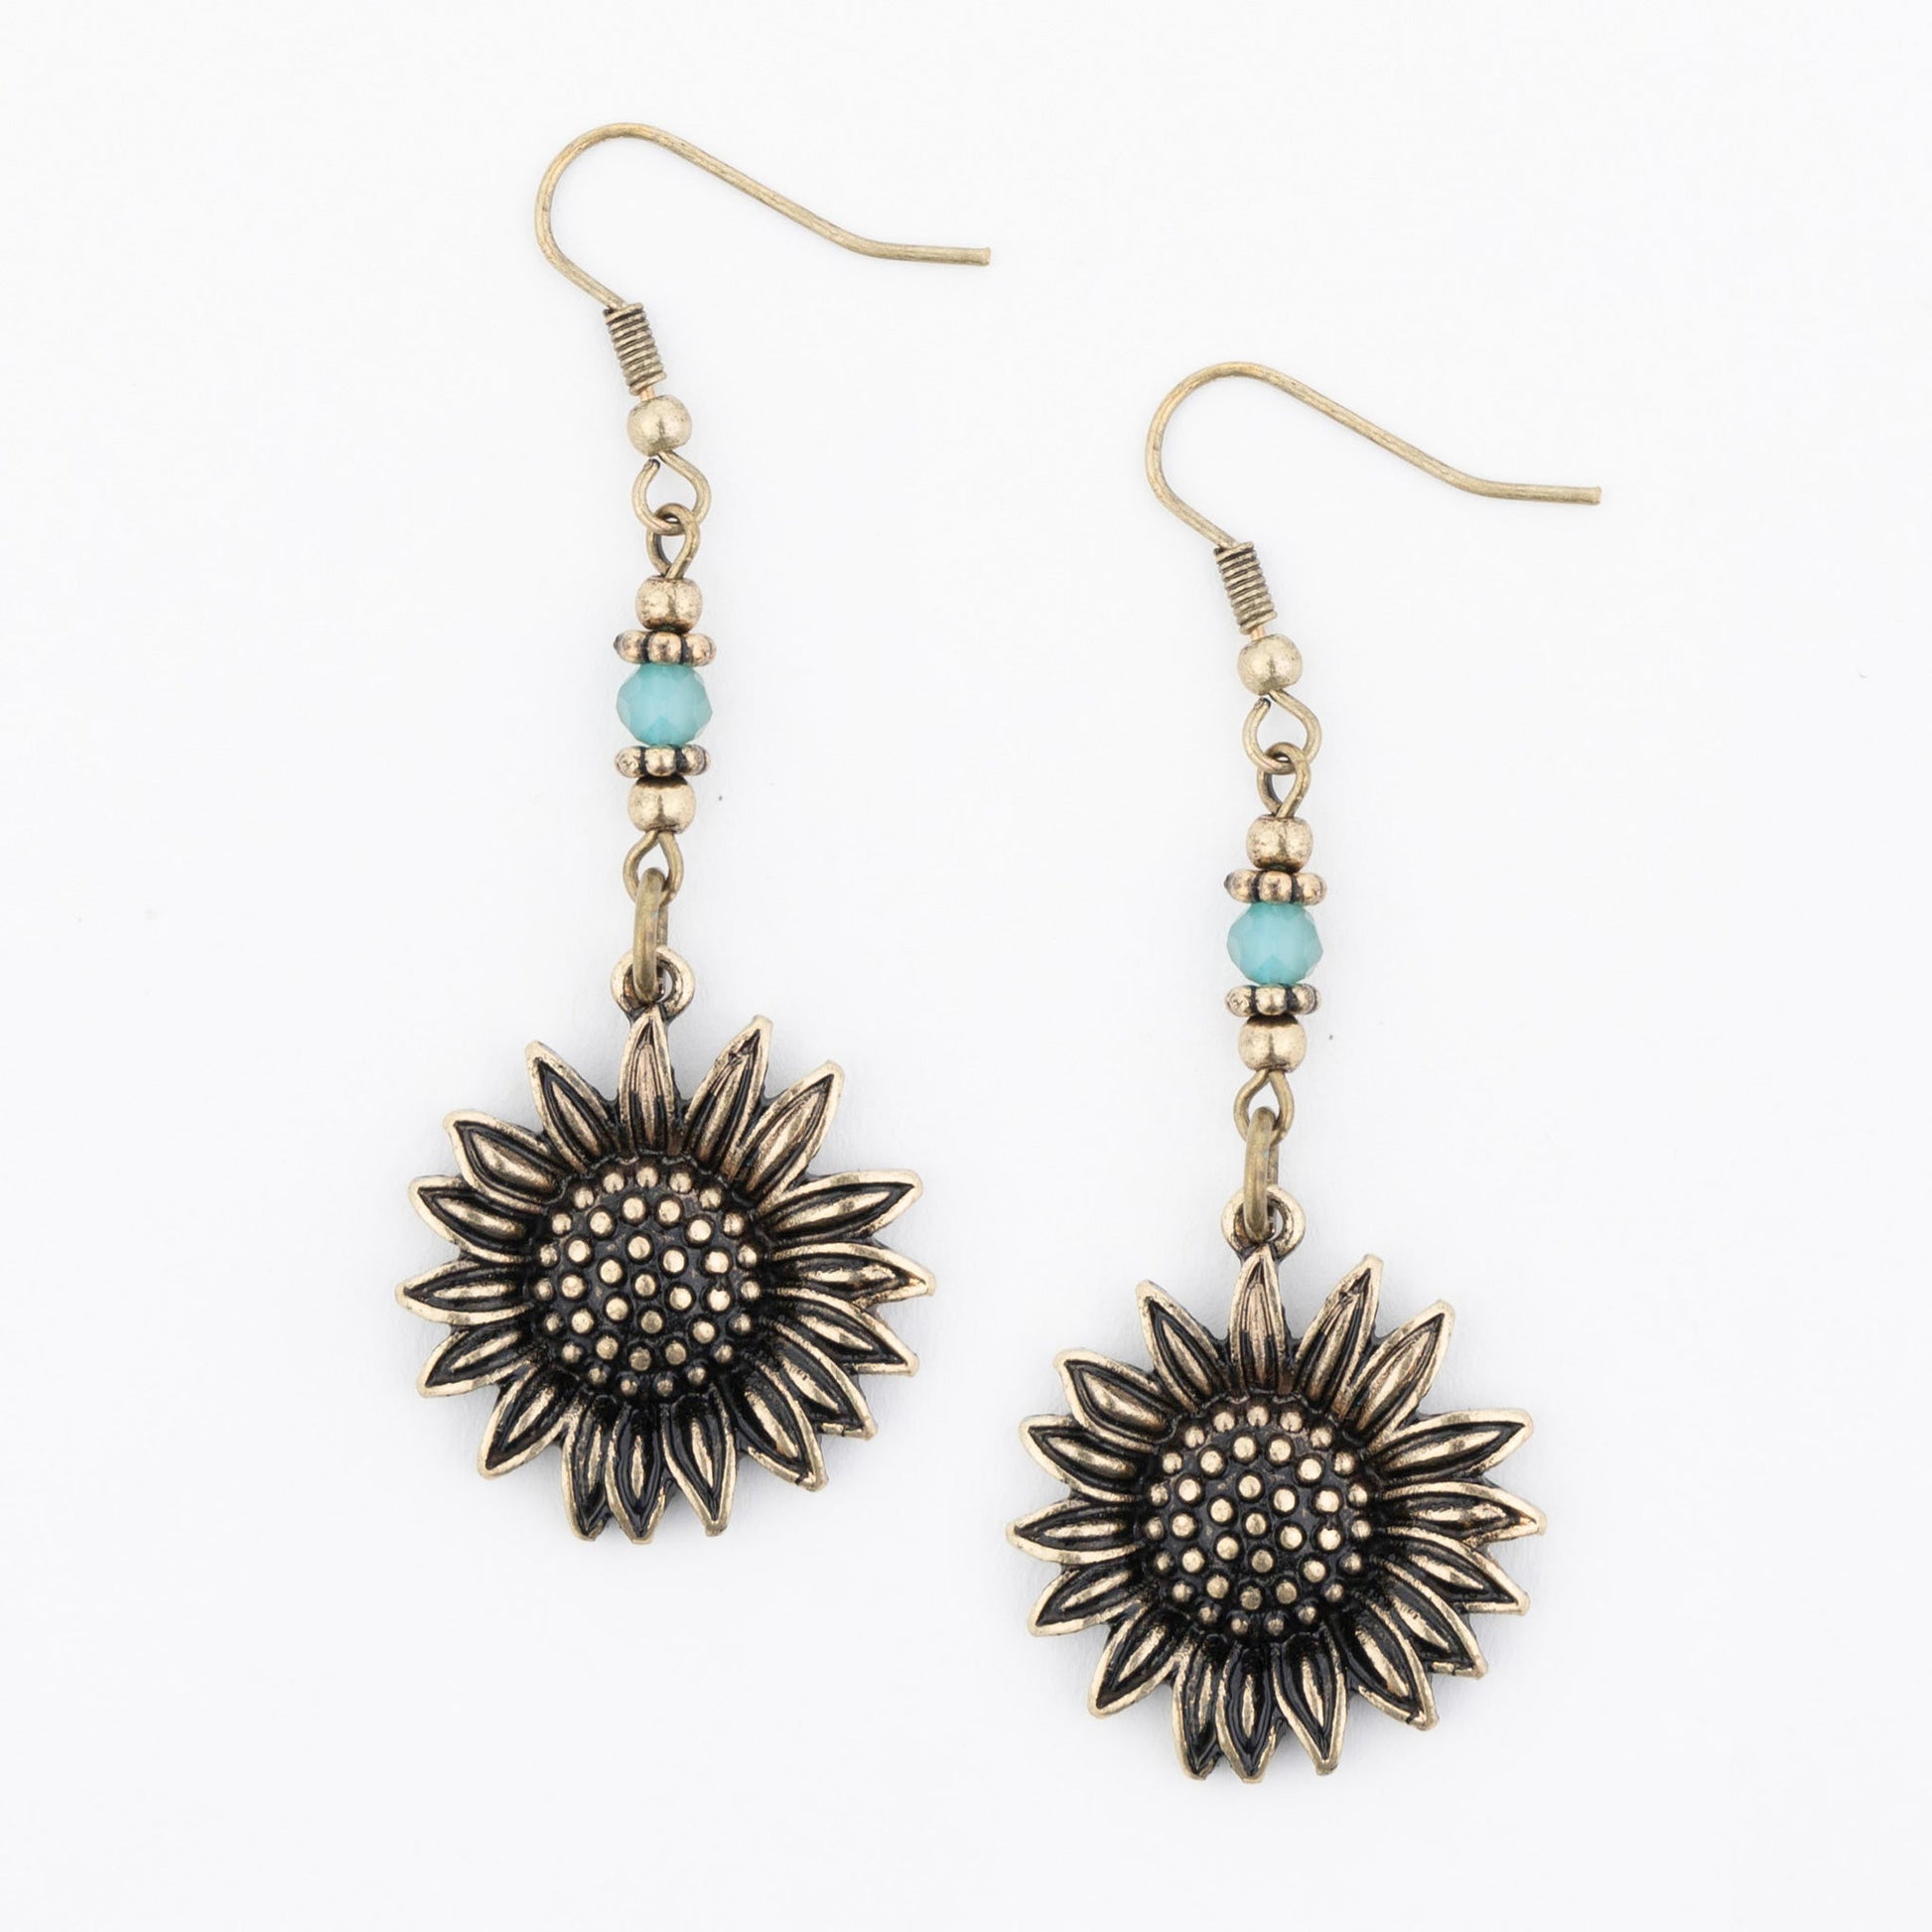 Wild Spirit Sunflower Earrings